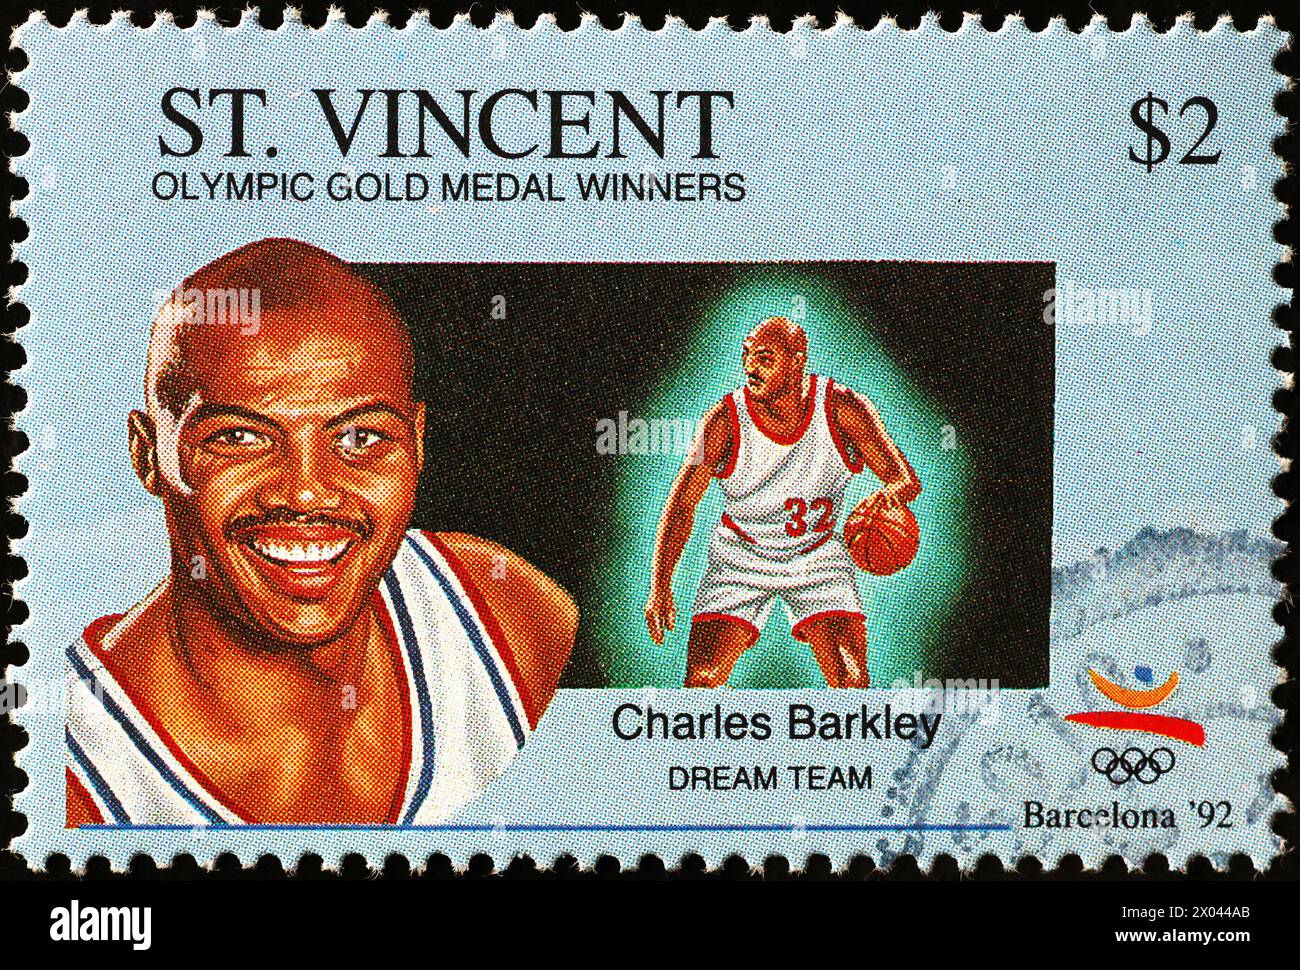 Charles Barkley, membre de l'équipe de rêve, sur timbre-poste Banque D'Images